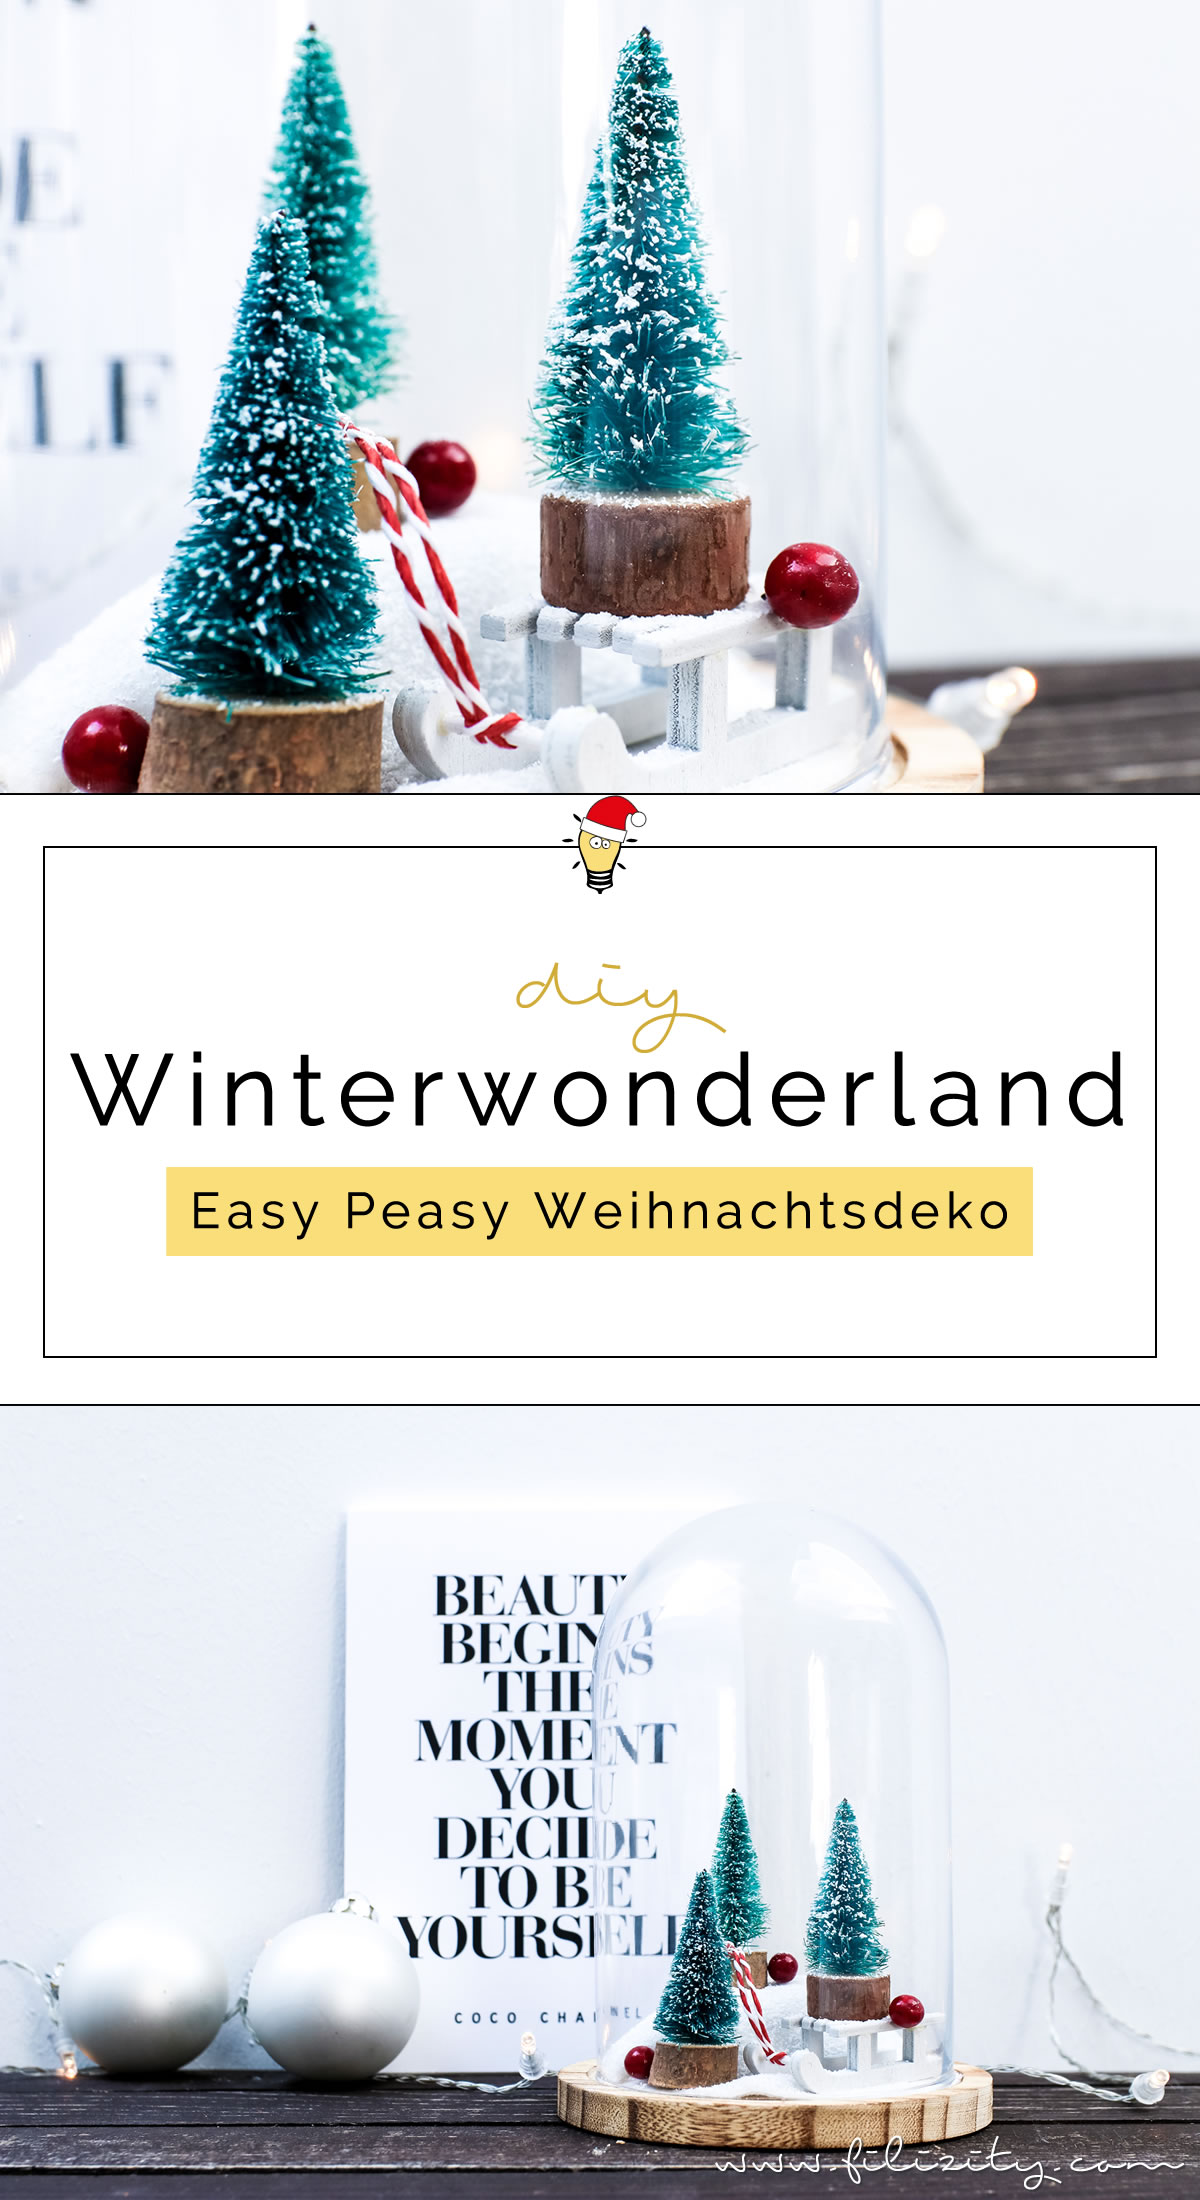 DIY Weihnachtsdeko 'Winterwonderland im Glas' | Filizity.com | DIY-Blog aus dem Rheinland #weihnachten #winter #deko #ohtannenbaum